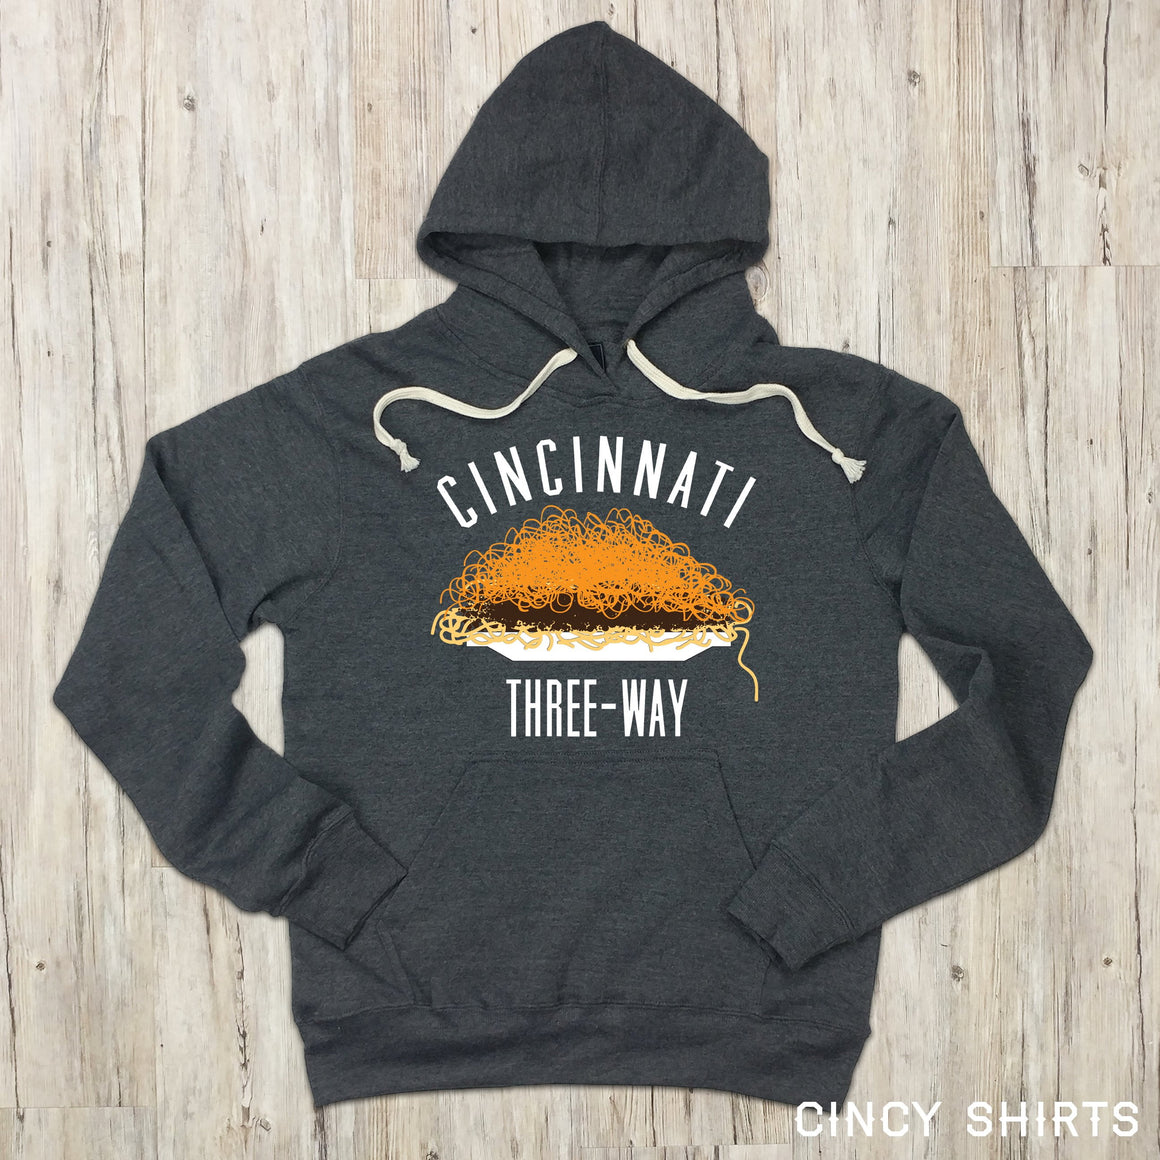 Cincinnati Chili 3-Way Hooded Sweatshirt - Cincy Shirts